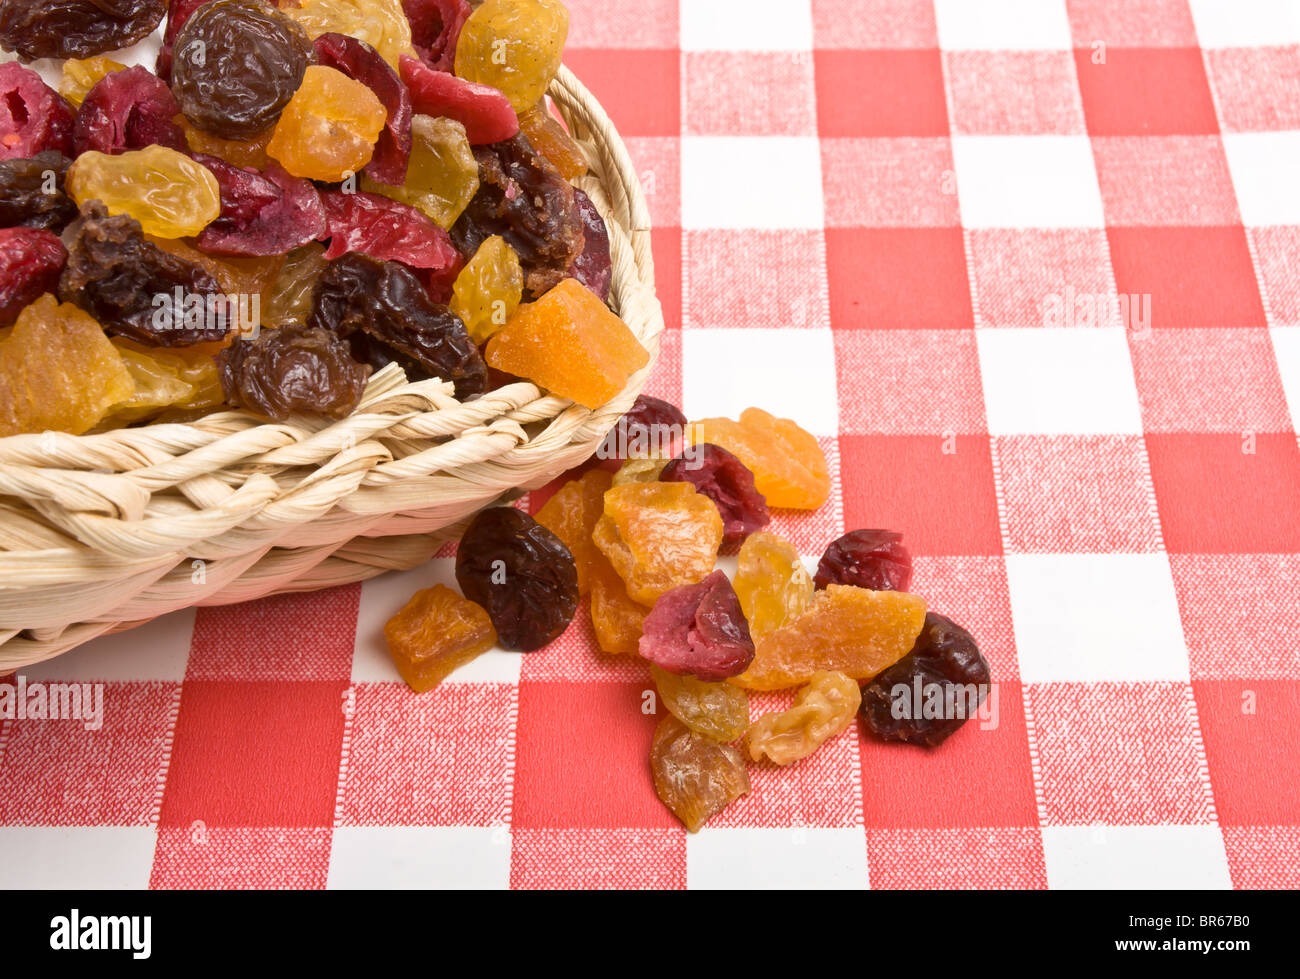 Frutos secos de albaricoque, Sultana, pasas y arándanos derramándose sobre el mantel rojo y blanco. Foto de stock